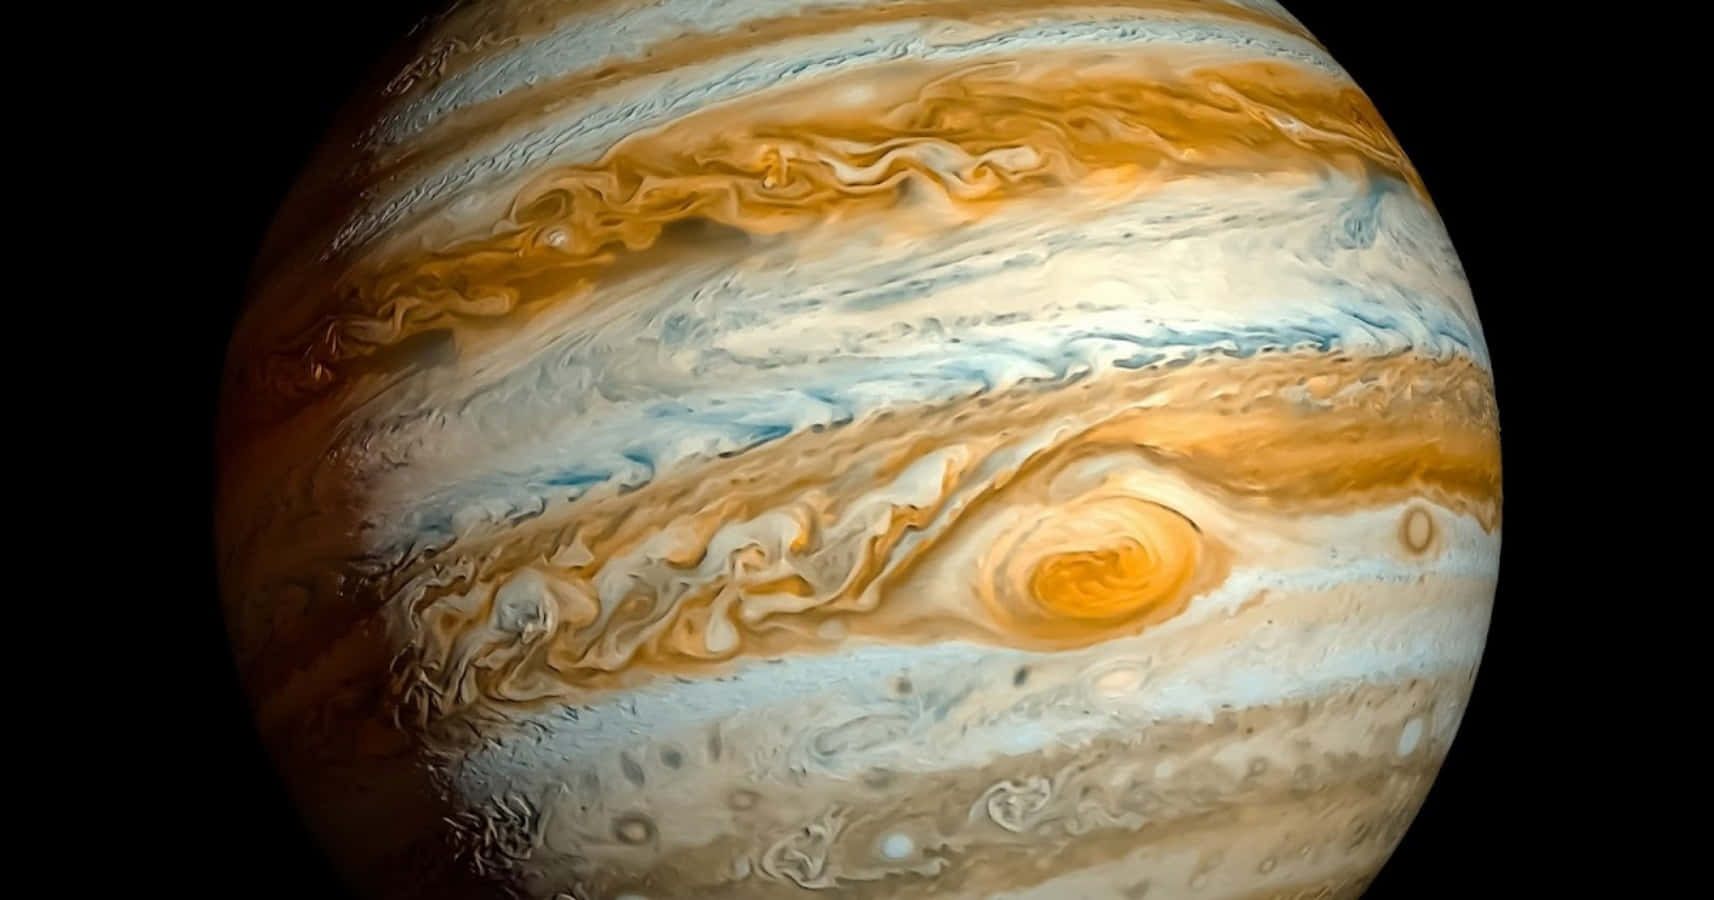 Dieoberfläche Des Jupiter Ist Auf Diesem Bild Zu Sehen.